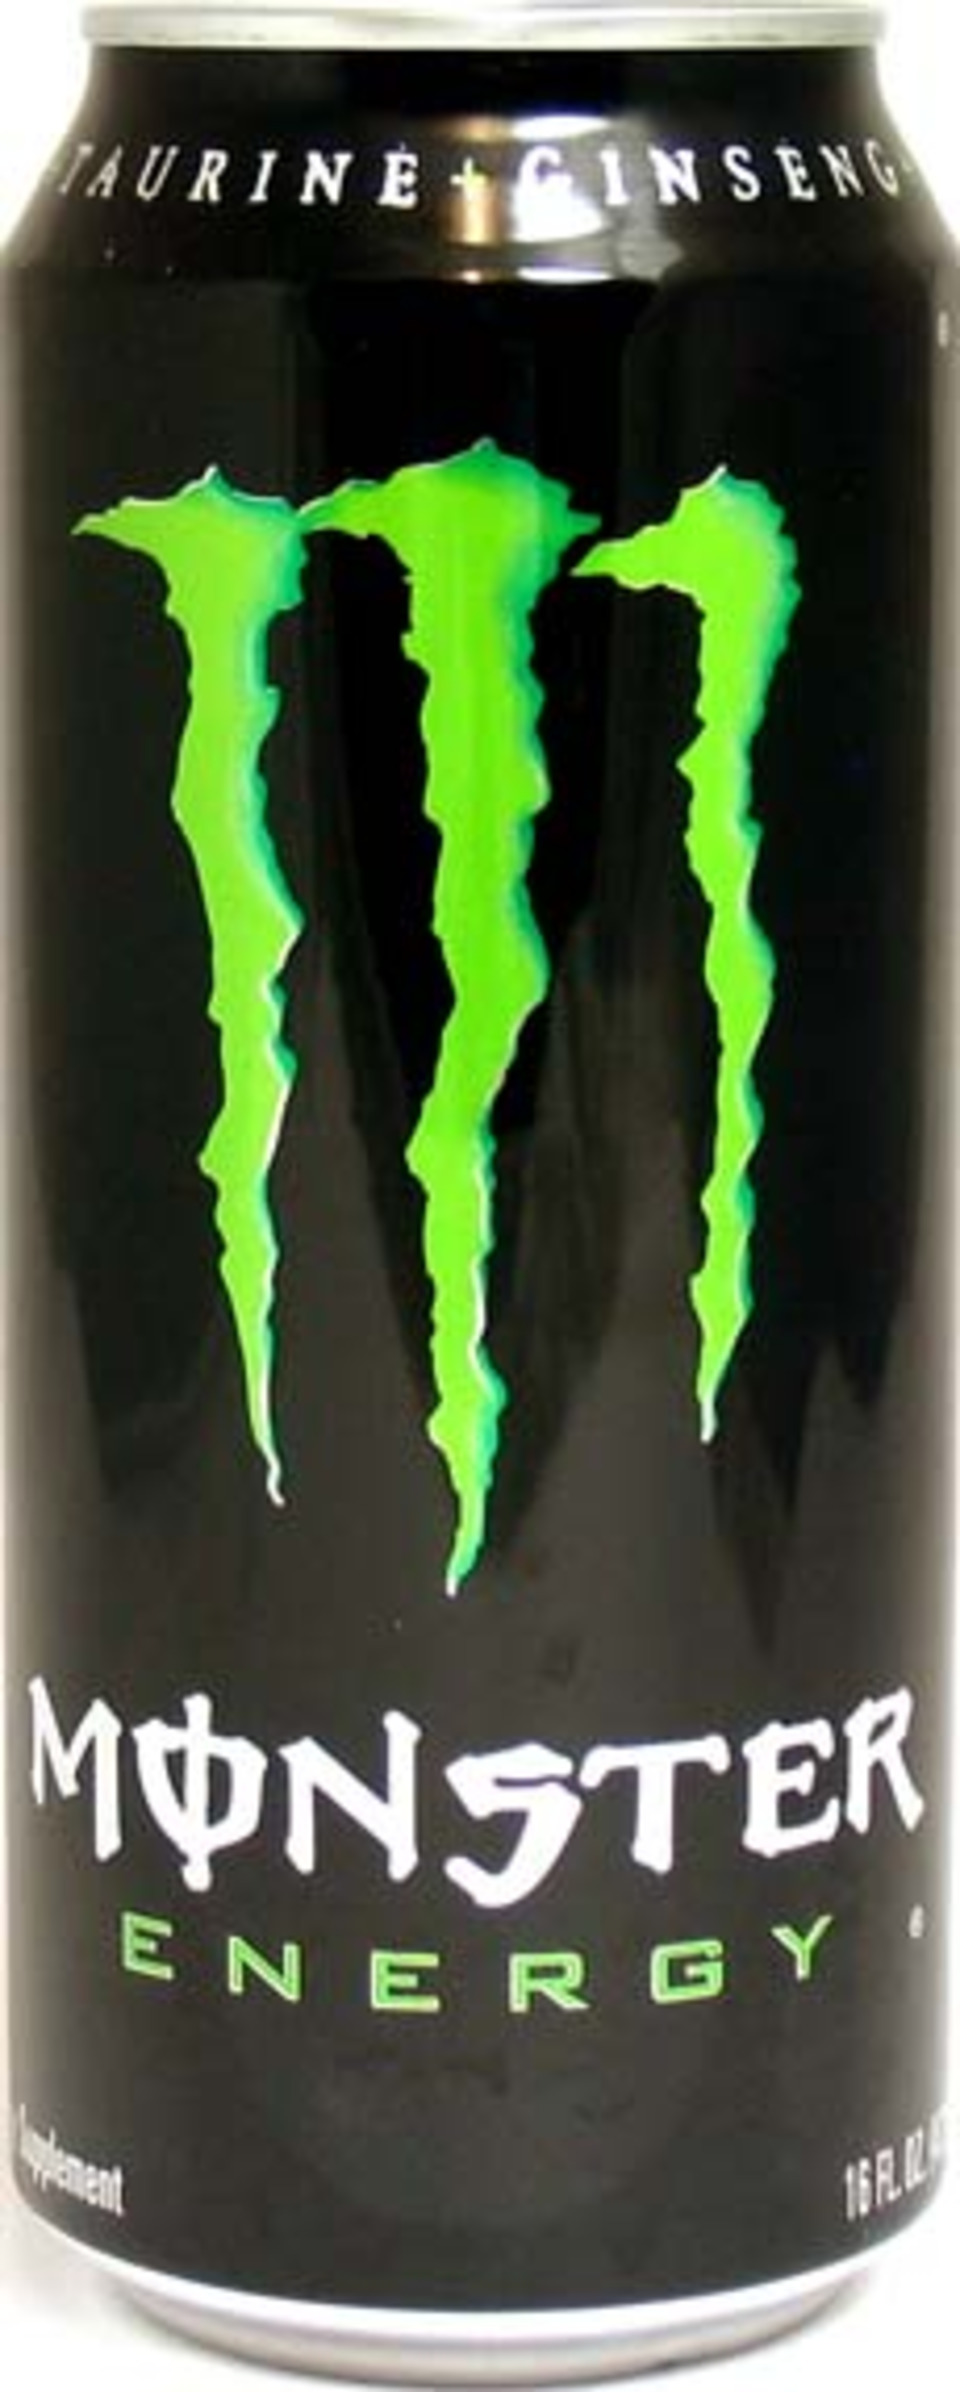 Hansen monster energy drink jobs